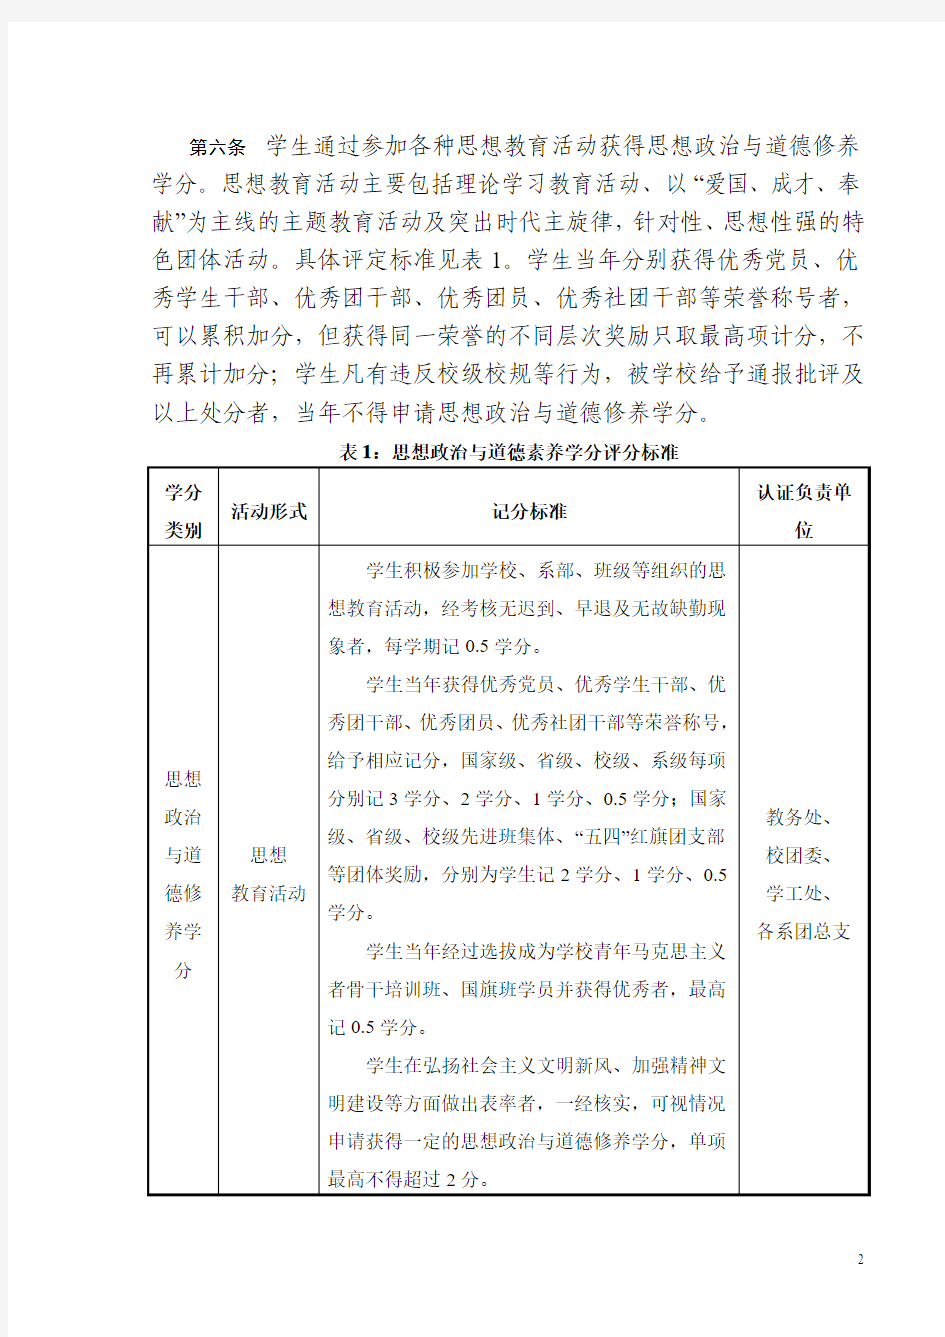 湖南人文科技学院素质拓展教育学分实施办法